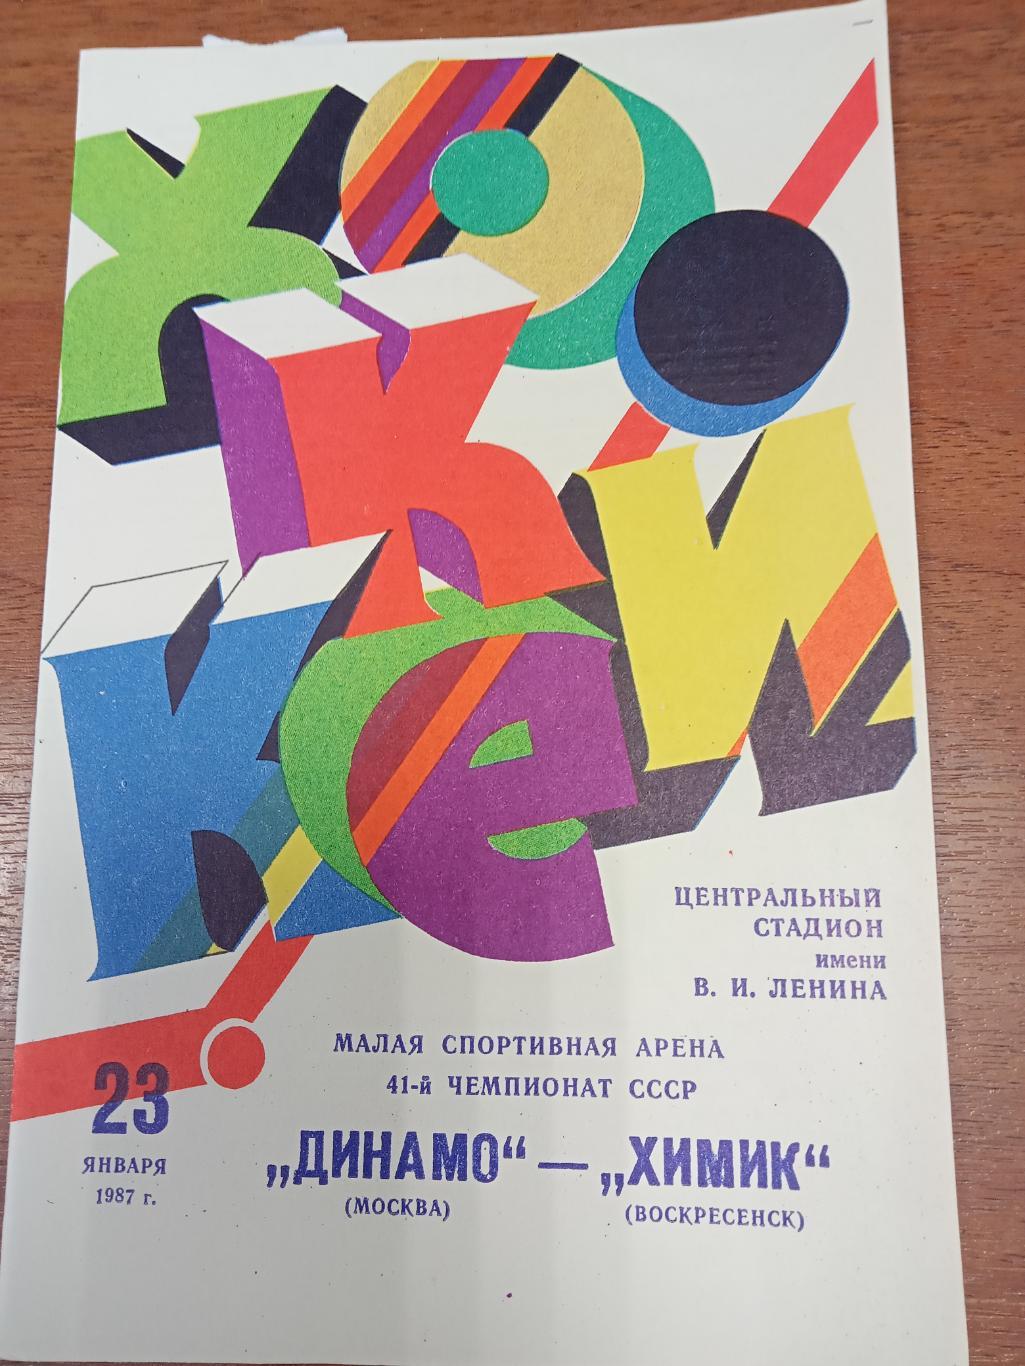 Динамо Москва - Химик Воскресенск 23 января 1987